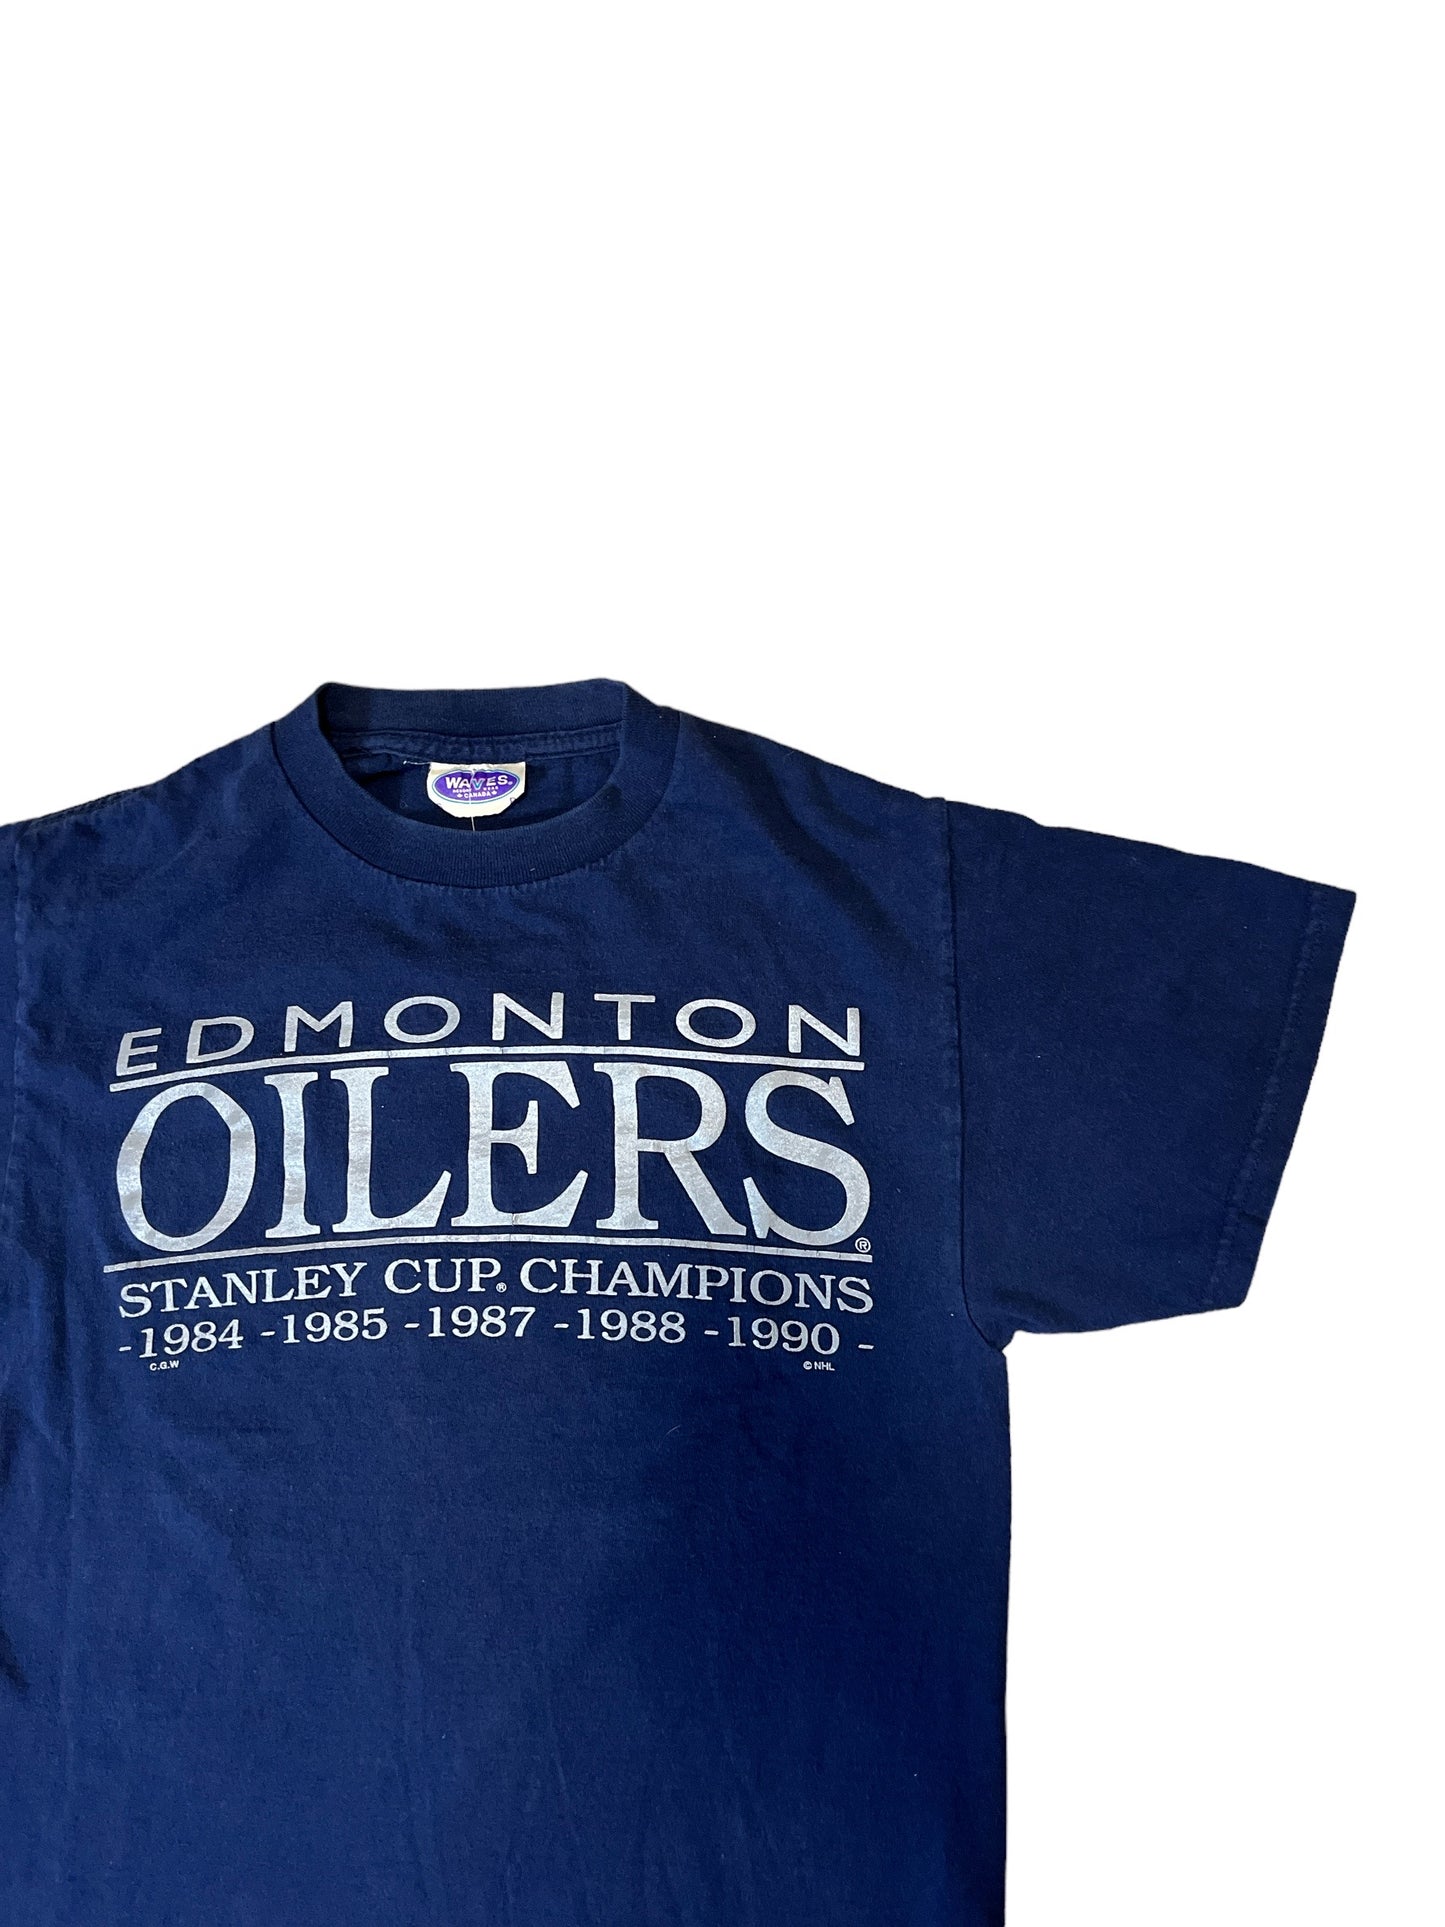 Vintage Waves Edmonton Oilers Stanley Cup Champs Tee